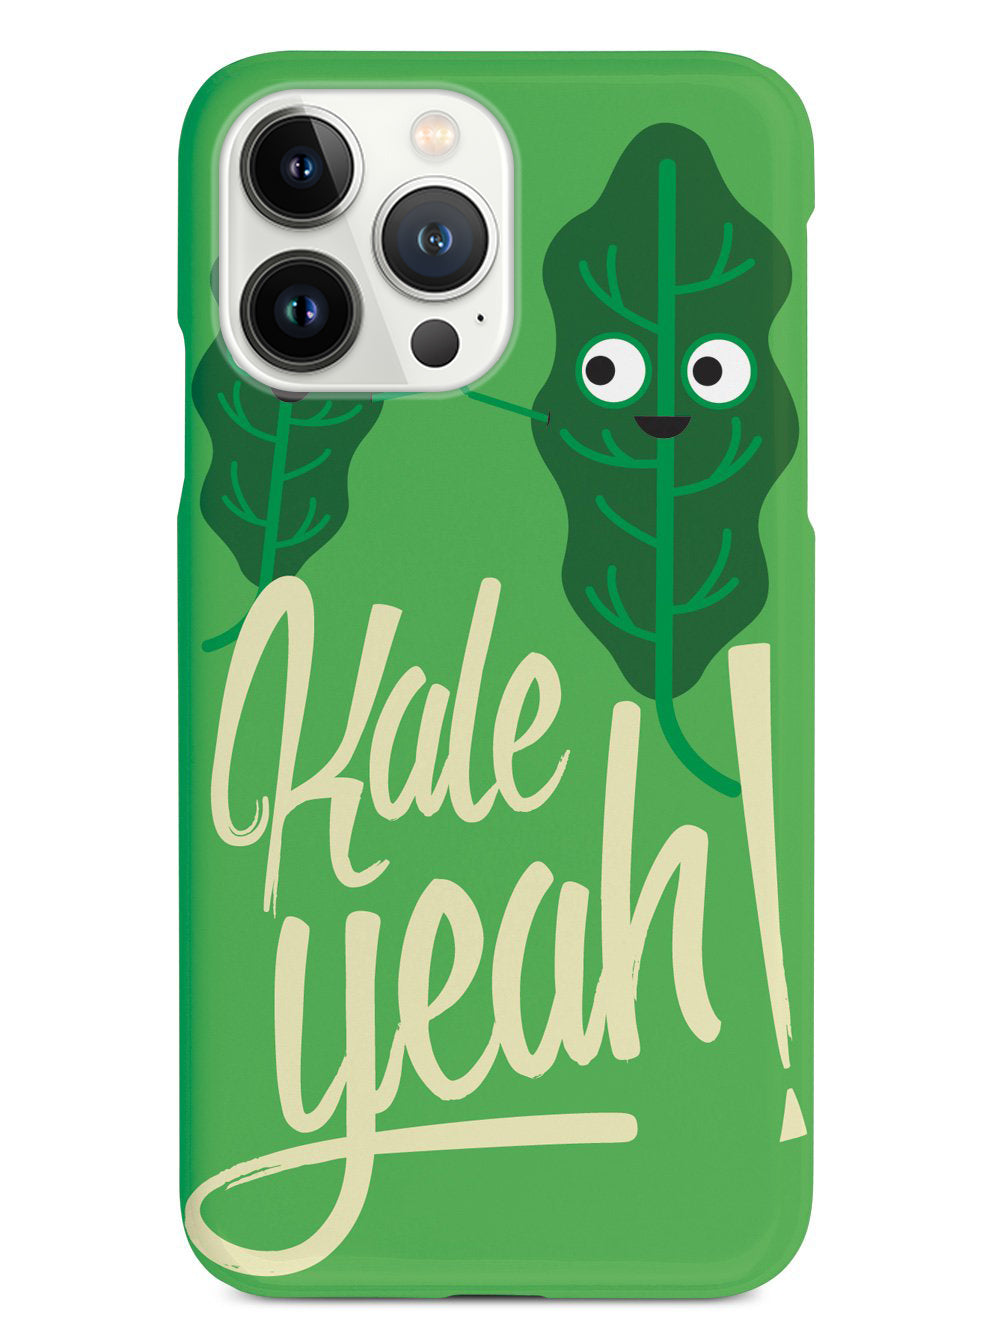 Kale Yeah! Case